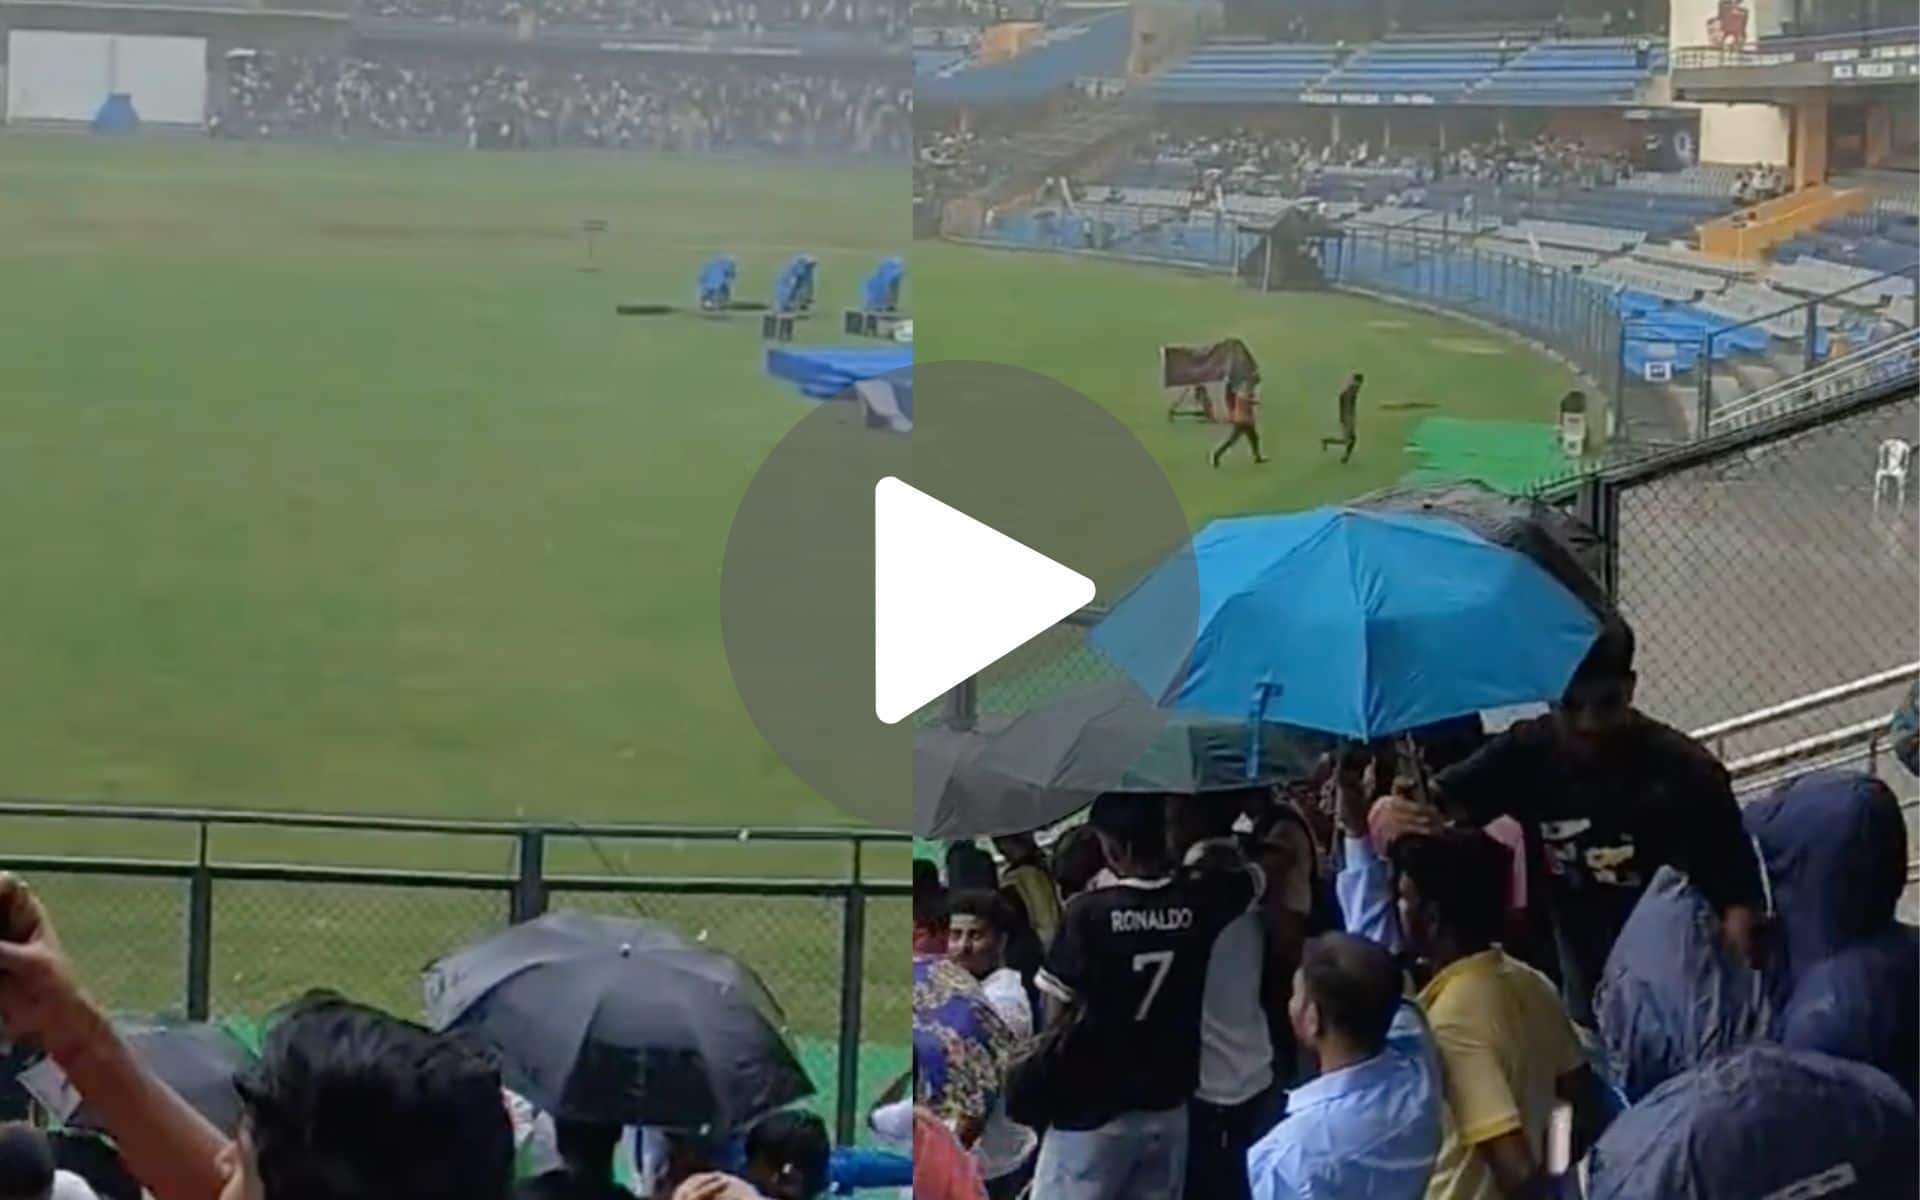 [देखें] T20 विश्व कप विजय परेड से पहले वानखेड़े स्टेडियम में भारी बारिश